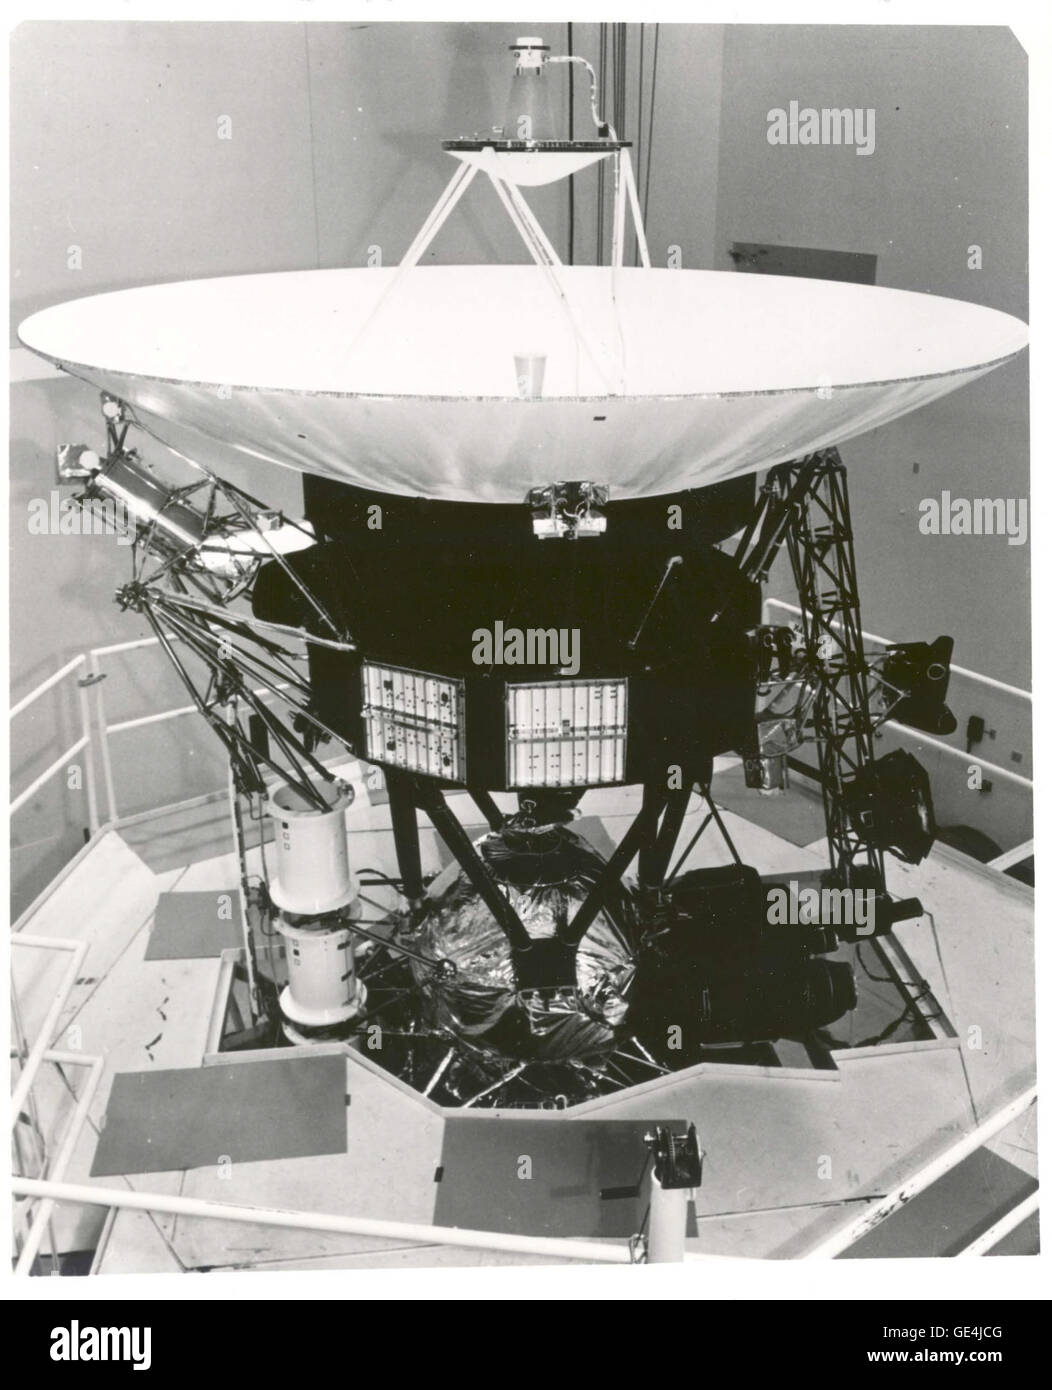 Due navicelle Voyager sono state lanciate nel 1977 per esplorare i pianeti esterni e alcuni di loro satelliti. Un prototipo di veicolo spaziale Voyager è mostrato in corrispondenza di NASA Jet Propulsion Laboratory di Pasadena, California, come ha superato con successo i test di vibrazione che simulava il lancio previsto l'ambiente. La grande antenna parabolica in alto è di 3,7 metri di diametro ed è stato utilizzato sia a banda S e X-banda di frequenze radio per comunicare con la terra su grandi distanze dai pianeti esterni. La navicella spaziale ha ricevuto energia elettrica dal nucleare tre fonti di alimentazione (in basso a sinistra). La Shiny cylind Foto Stock